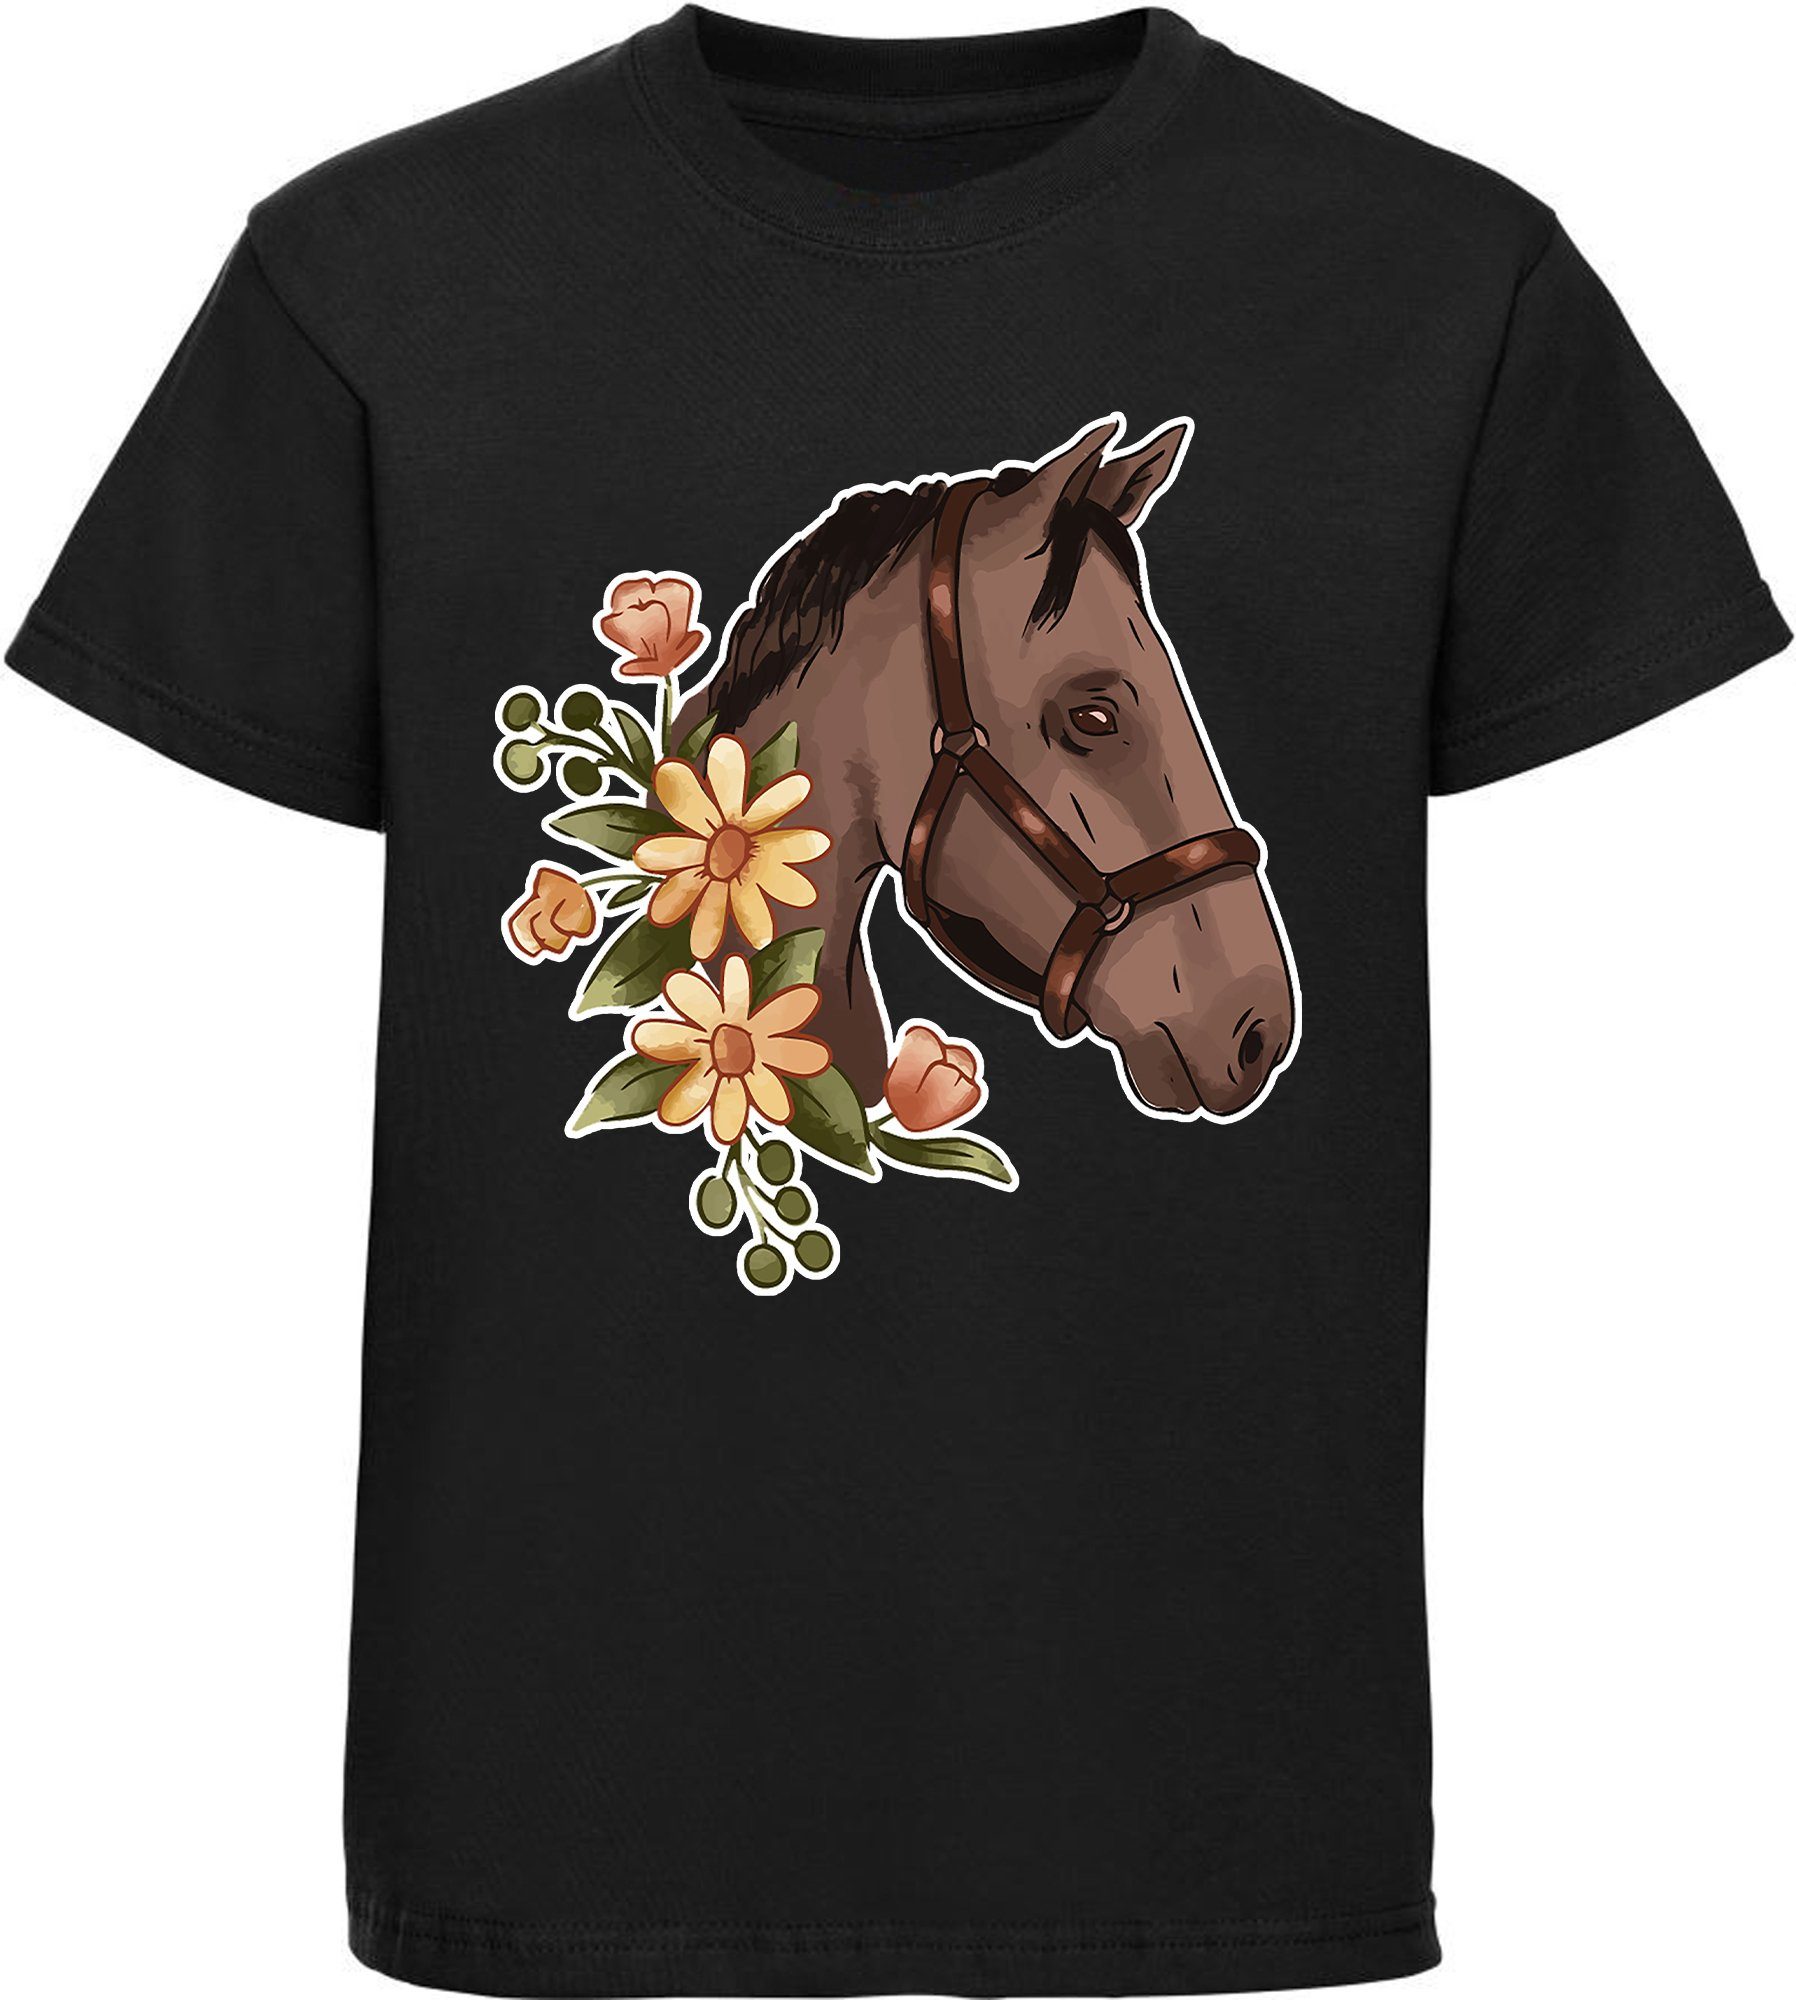 MyDesign24 Print-Shirt bedrucktes i180 T-Shirt mit Dunkelbrauner Pferdekopf - Aufdruck, Blumen schwarz Baumwollshirt mit Mädchen